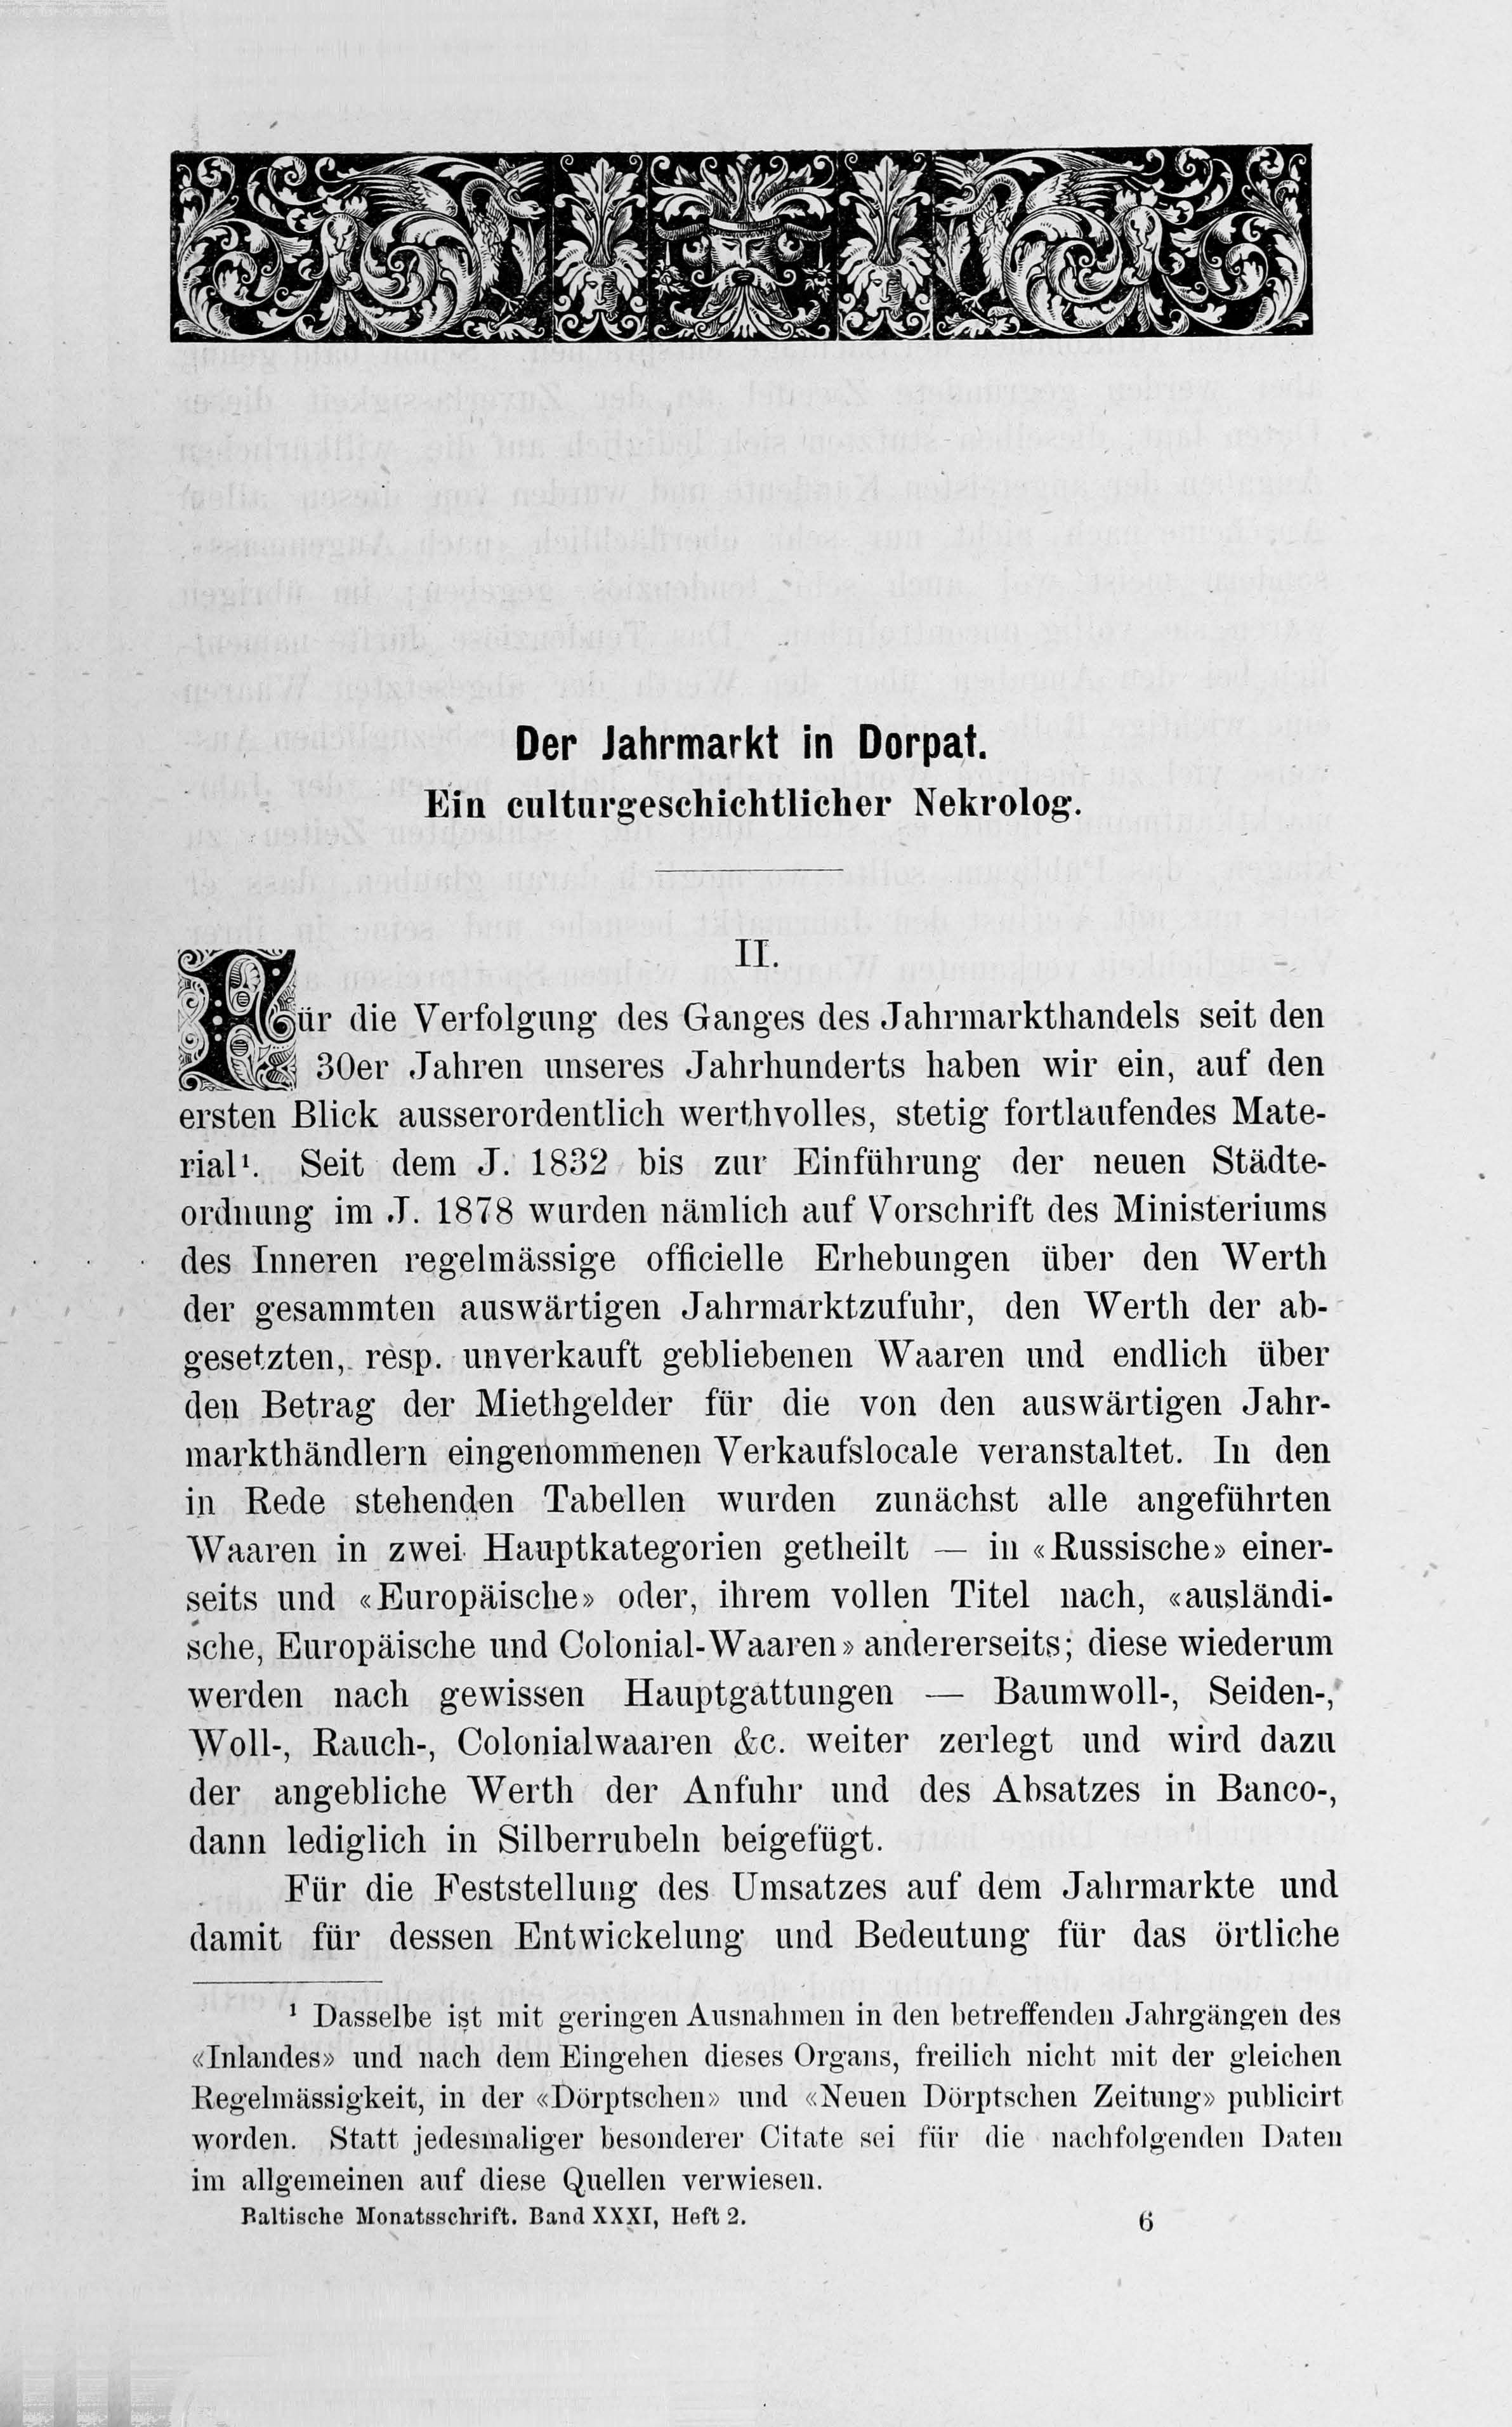 Der Jahrmarkt in Dorpat (1884) | 21. Haupttext